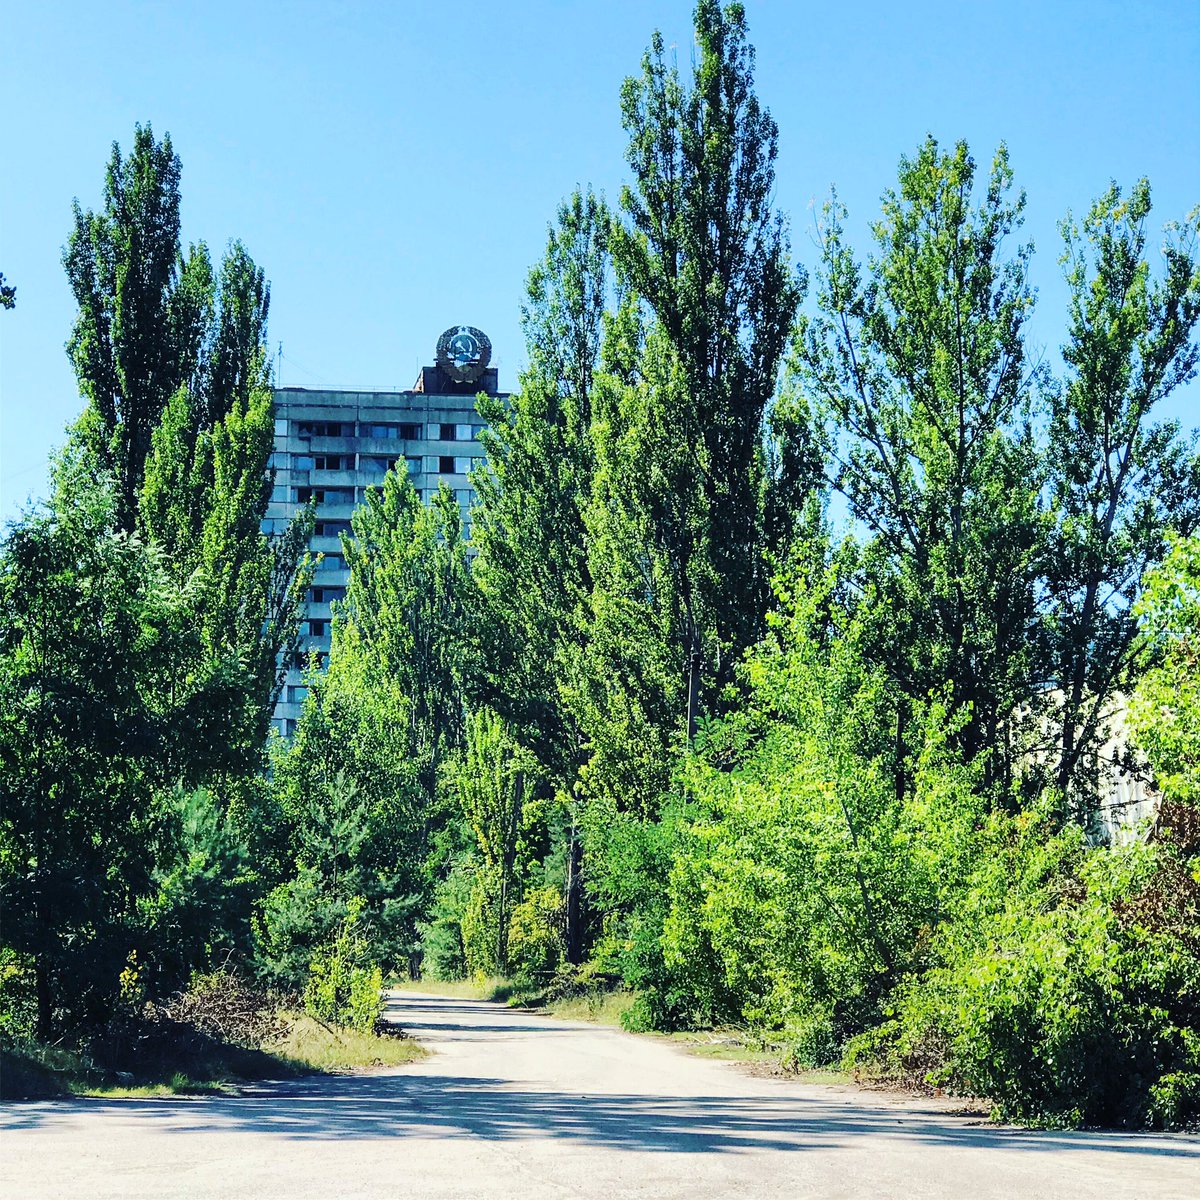 Puisque rien ne peut être touché/modifié, les symboles soviétiques, symboles retirés ailleurs dès l’indépendance de l’Ukraine au début des années 90, sont tjs là et L’Avenue Lénine est tjs l’artère principale.  #Tchernobyl  (Plus de photos:  http://Instagram.com/nashtagstagram )